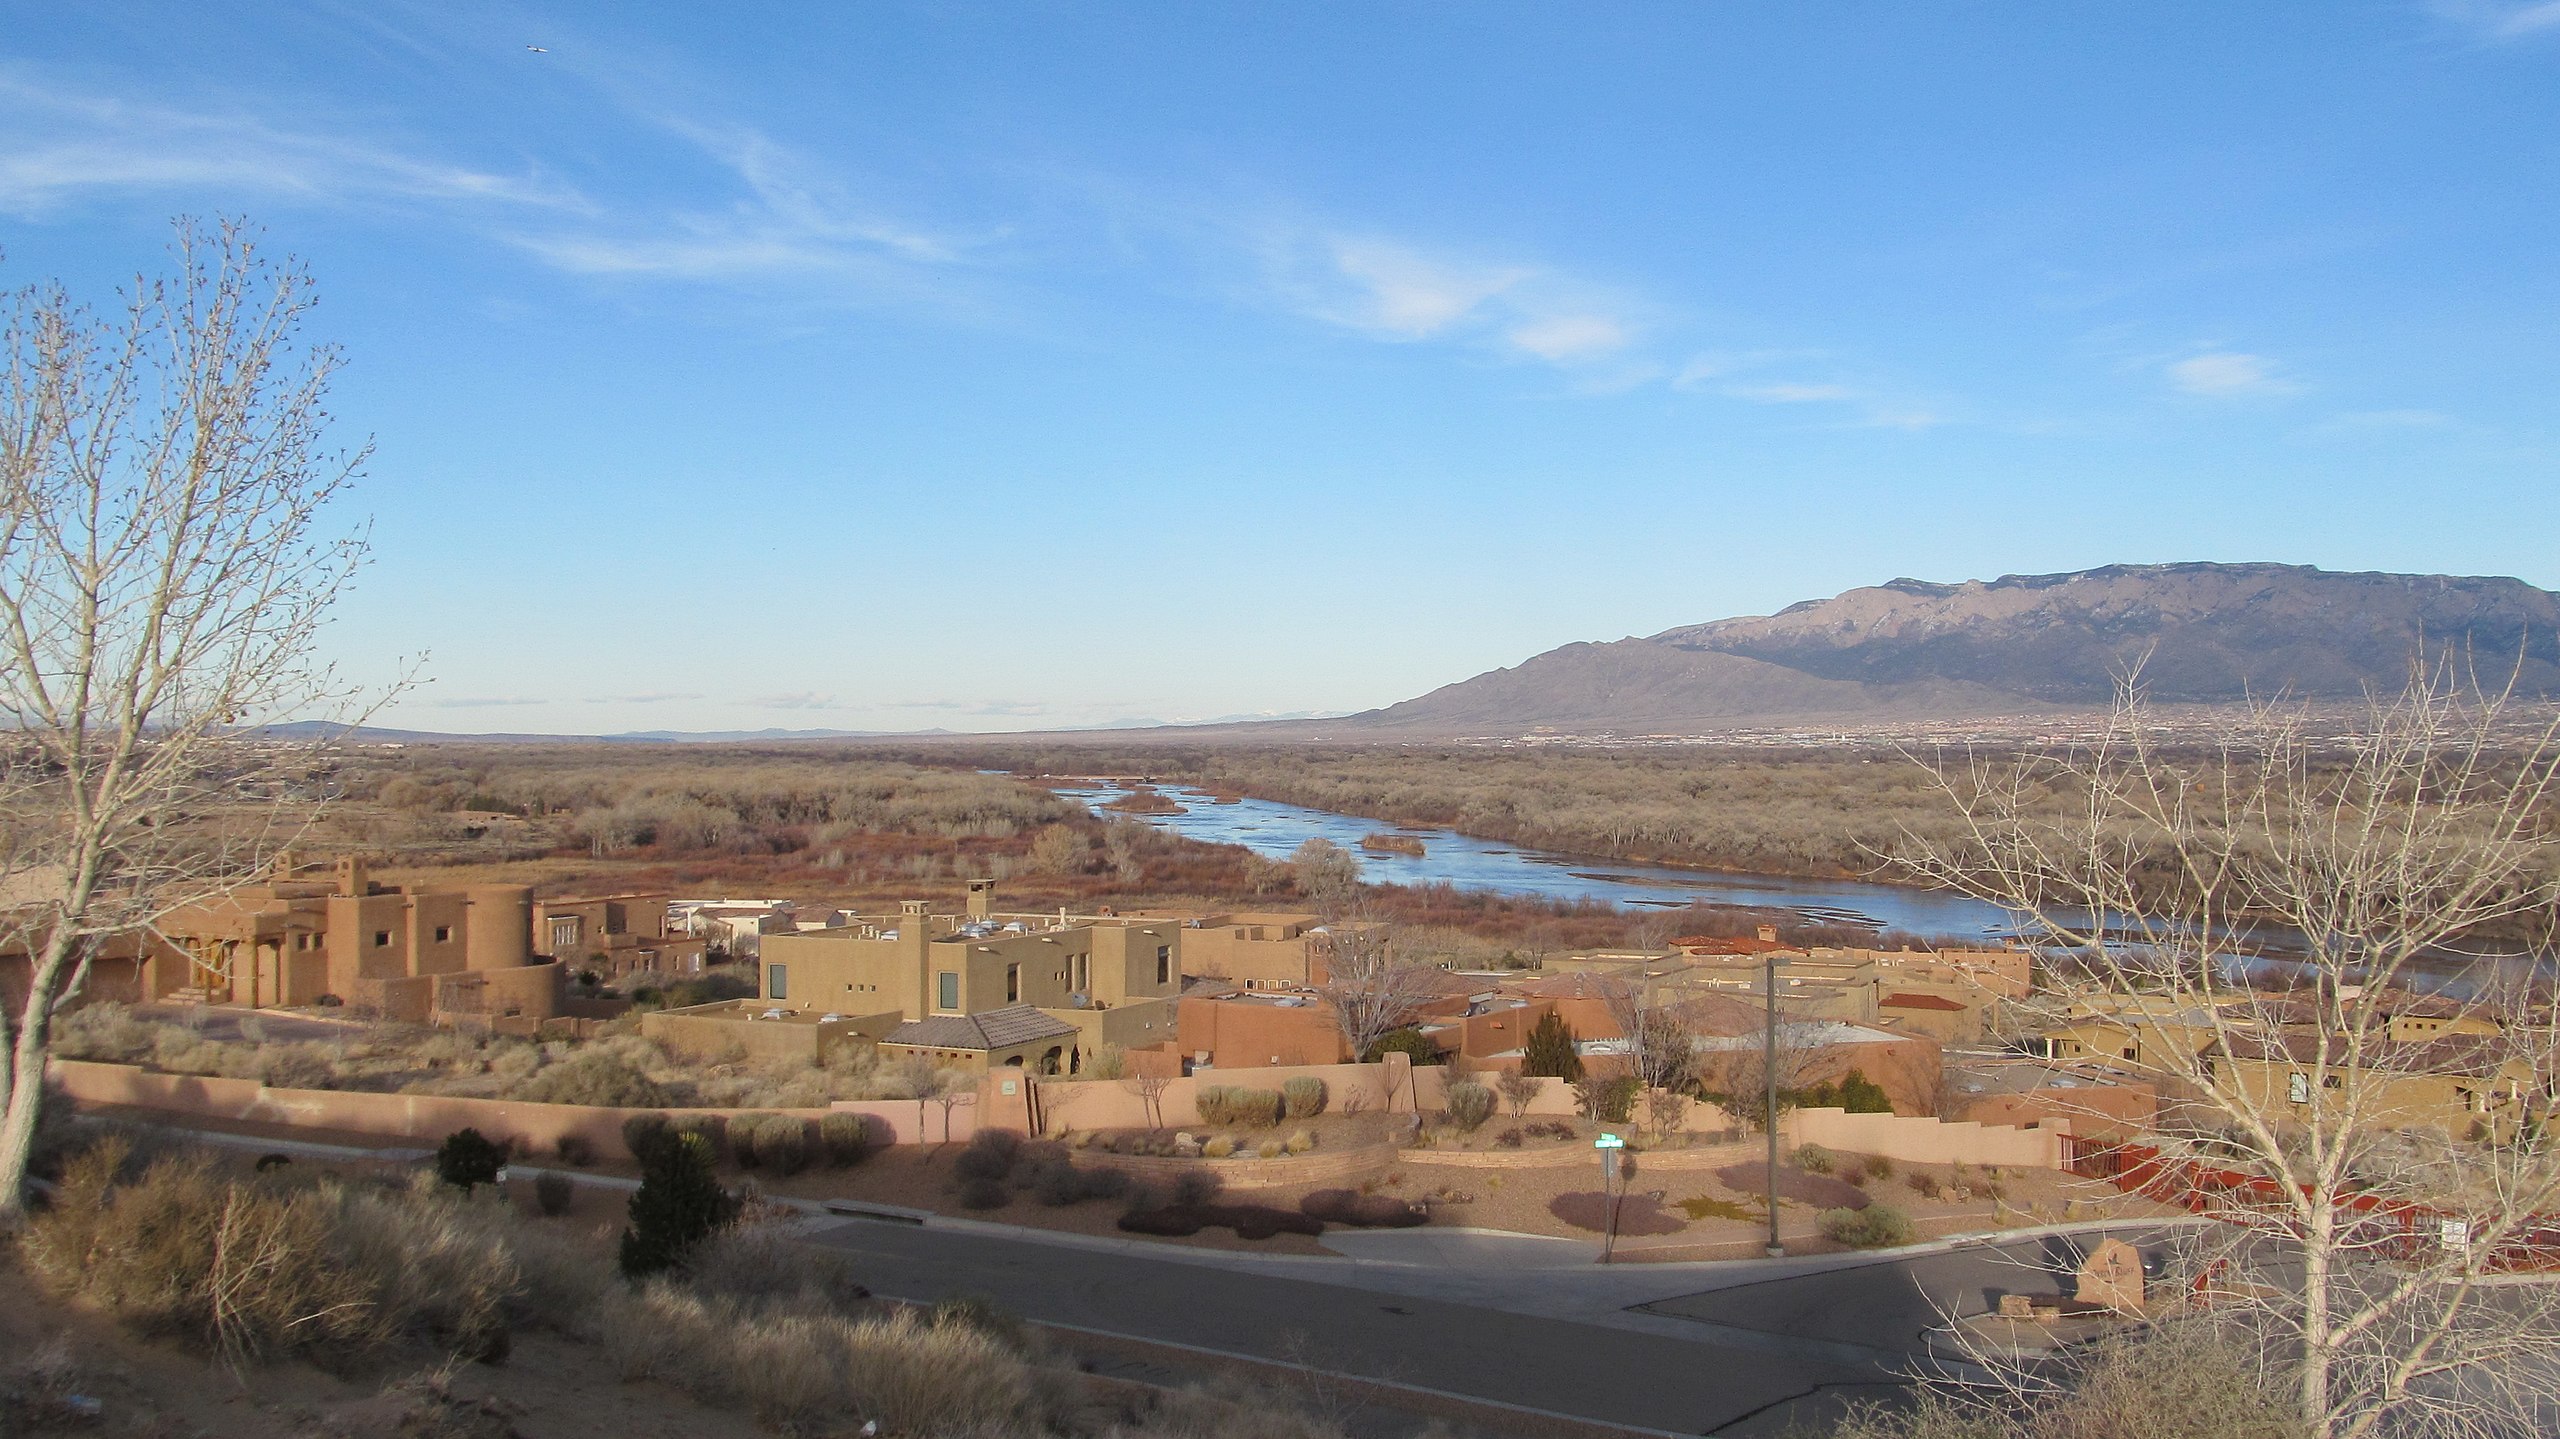 The Rio Grande near Albuquerque